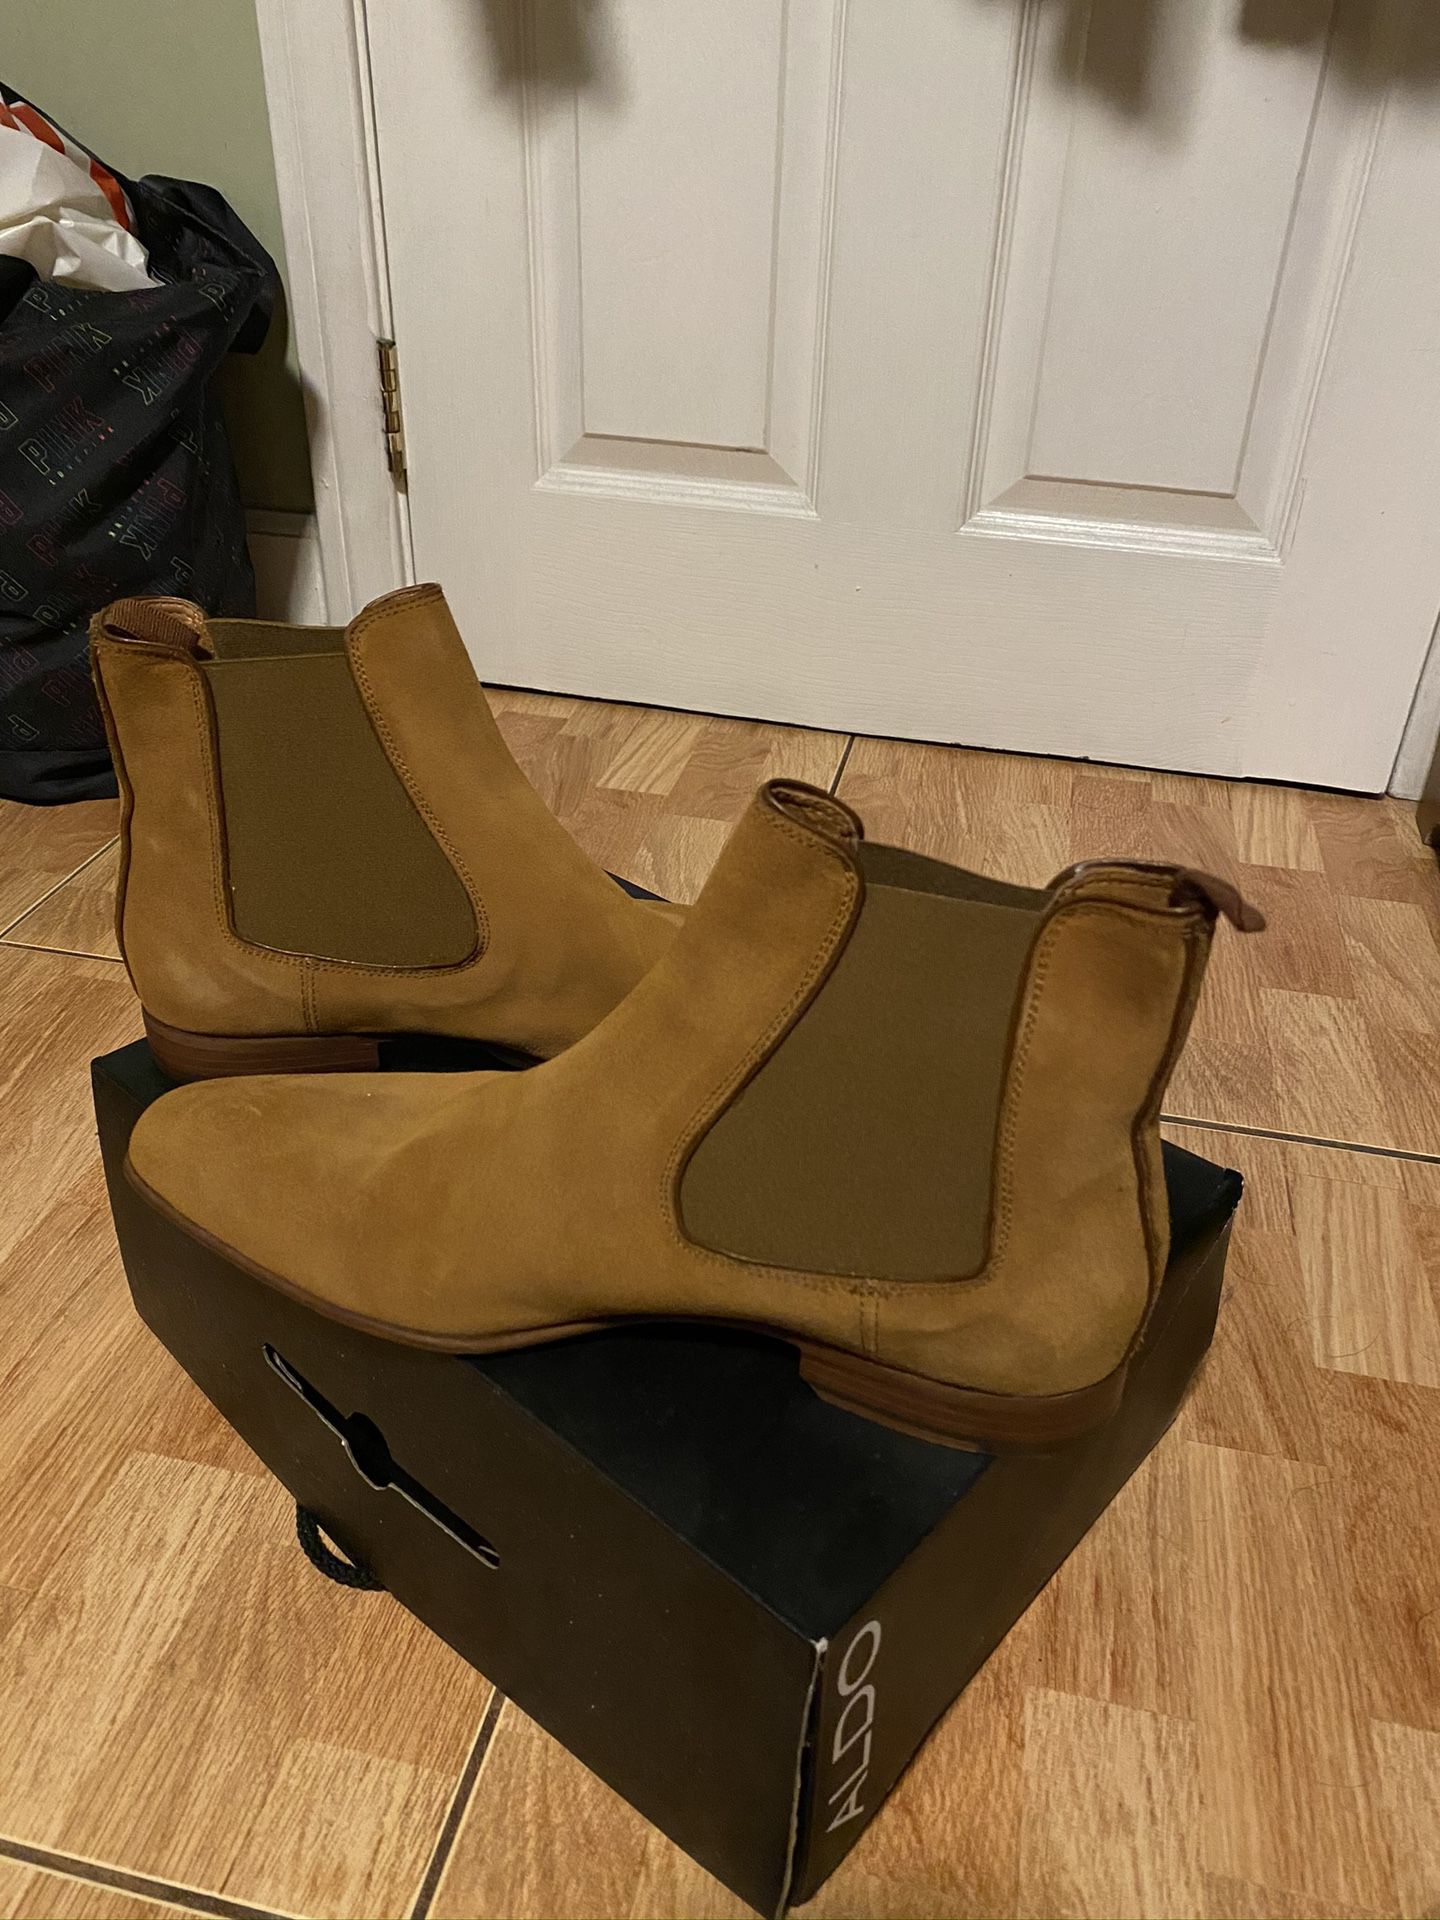 Aldo Men’s Chelsea Boots Size 11